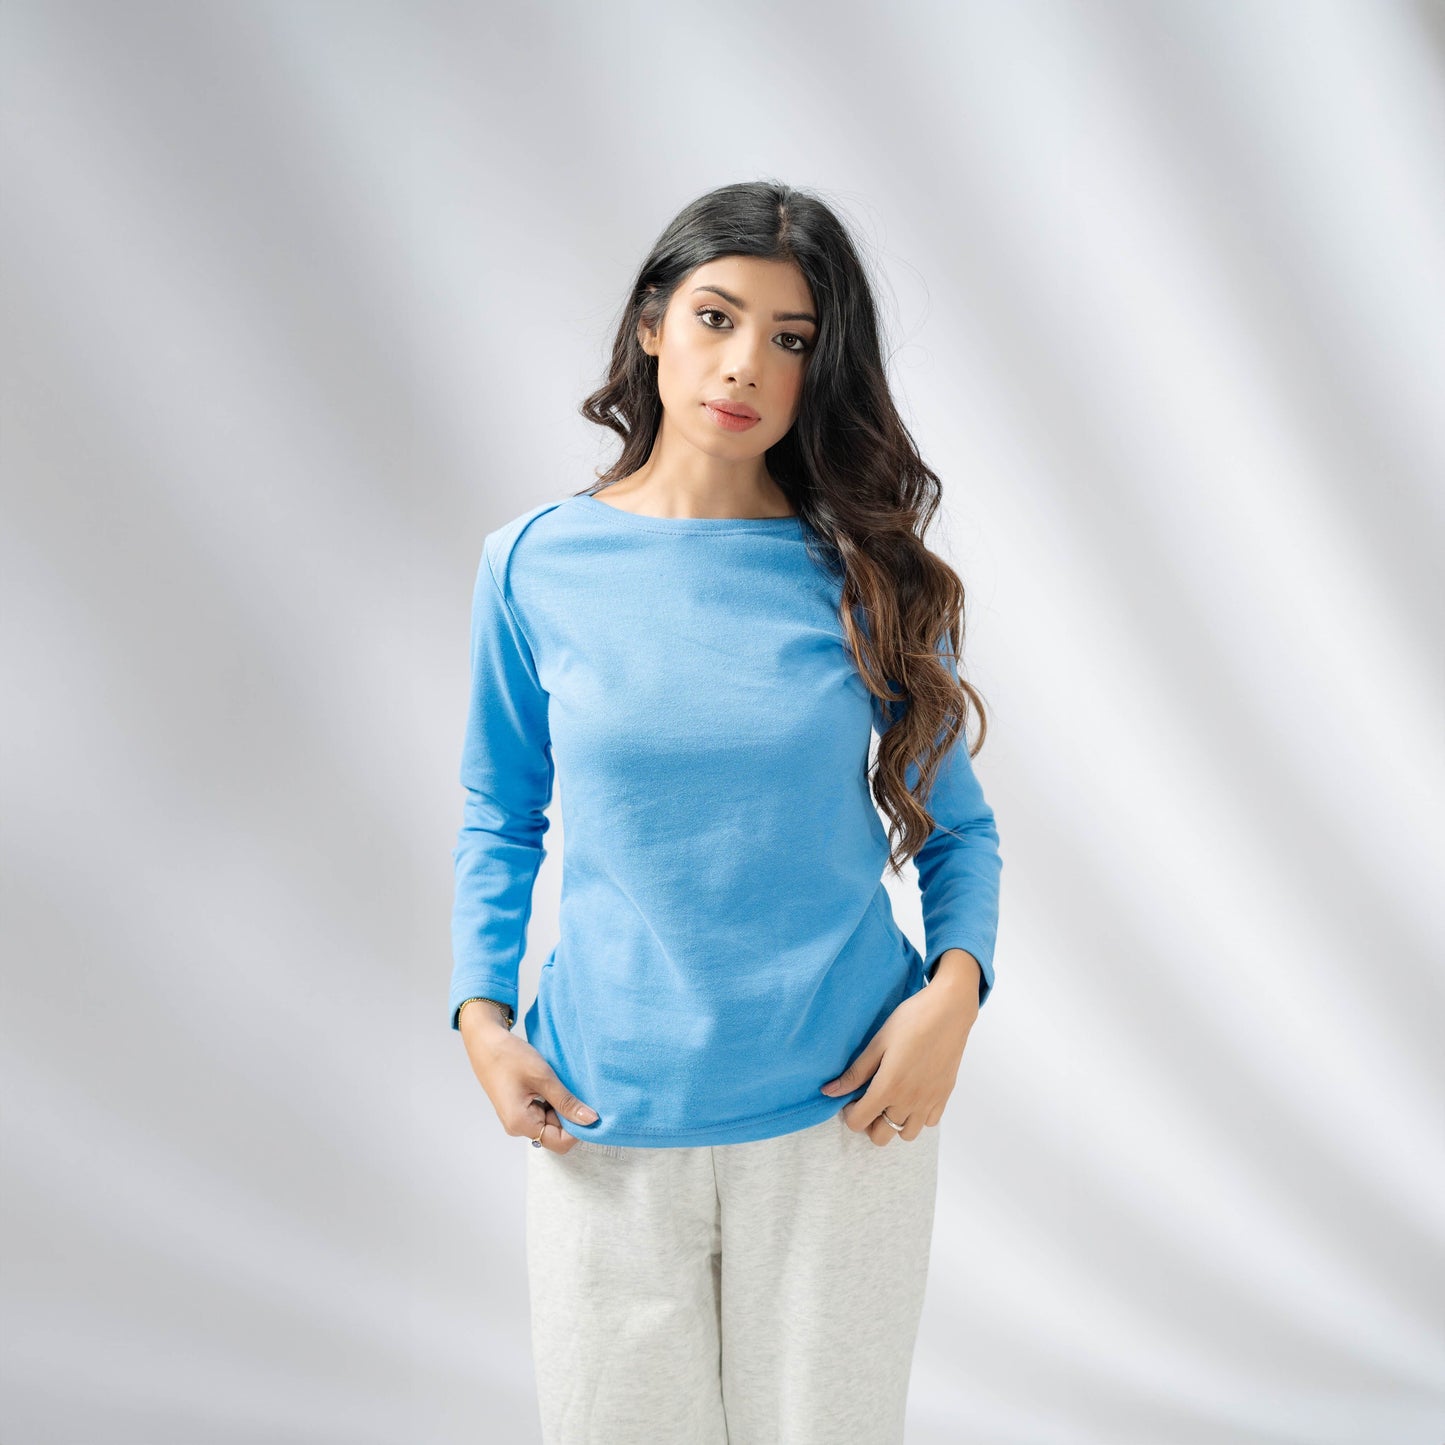 Max 21 Women’s Stylish Long Sleeves Sweat Shirt Women's Casual Shirt SZK Blue S 